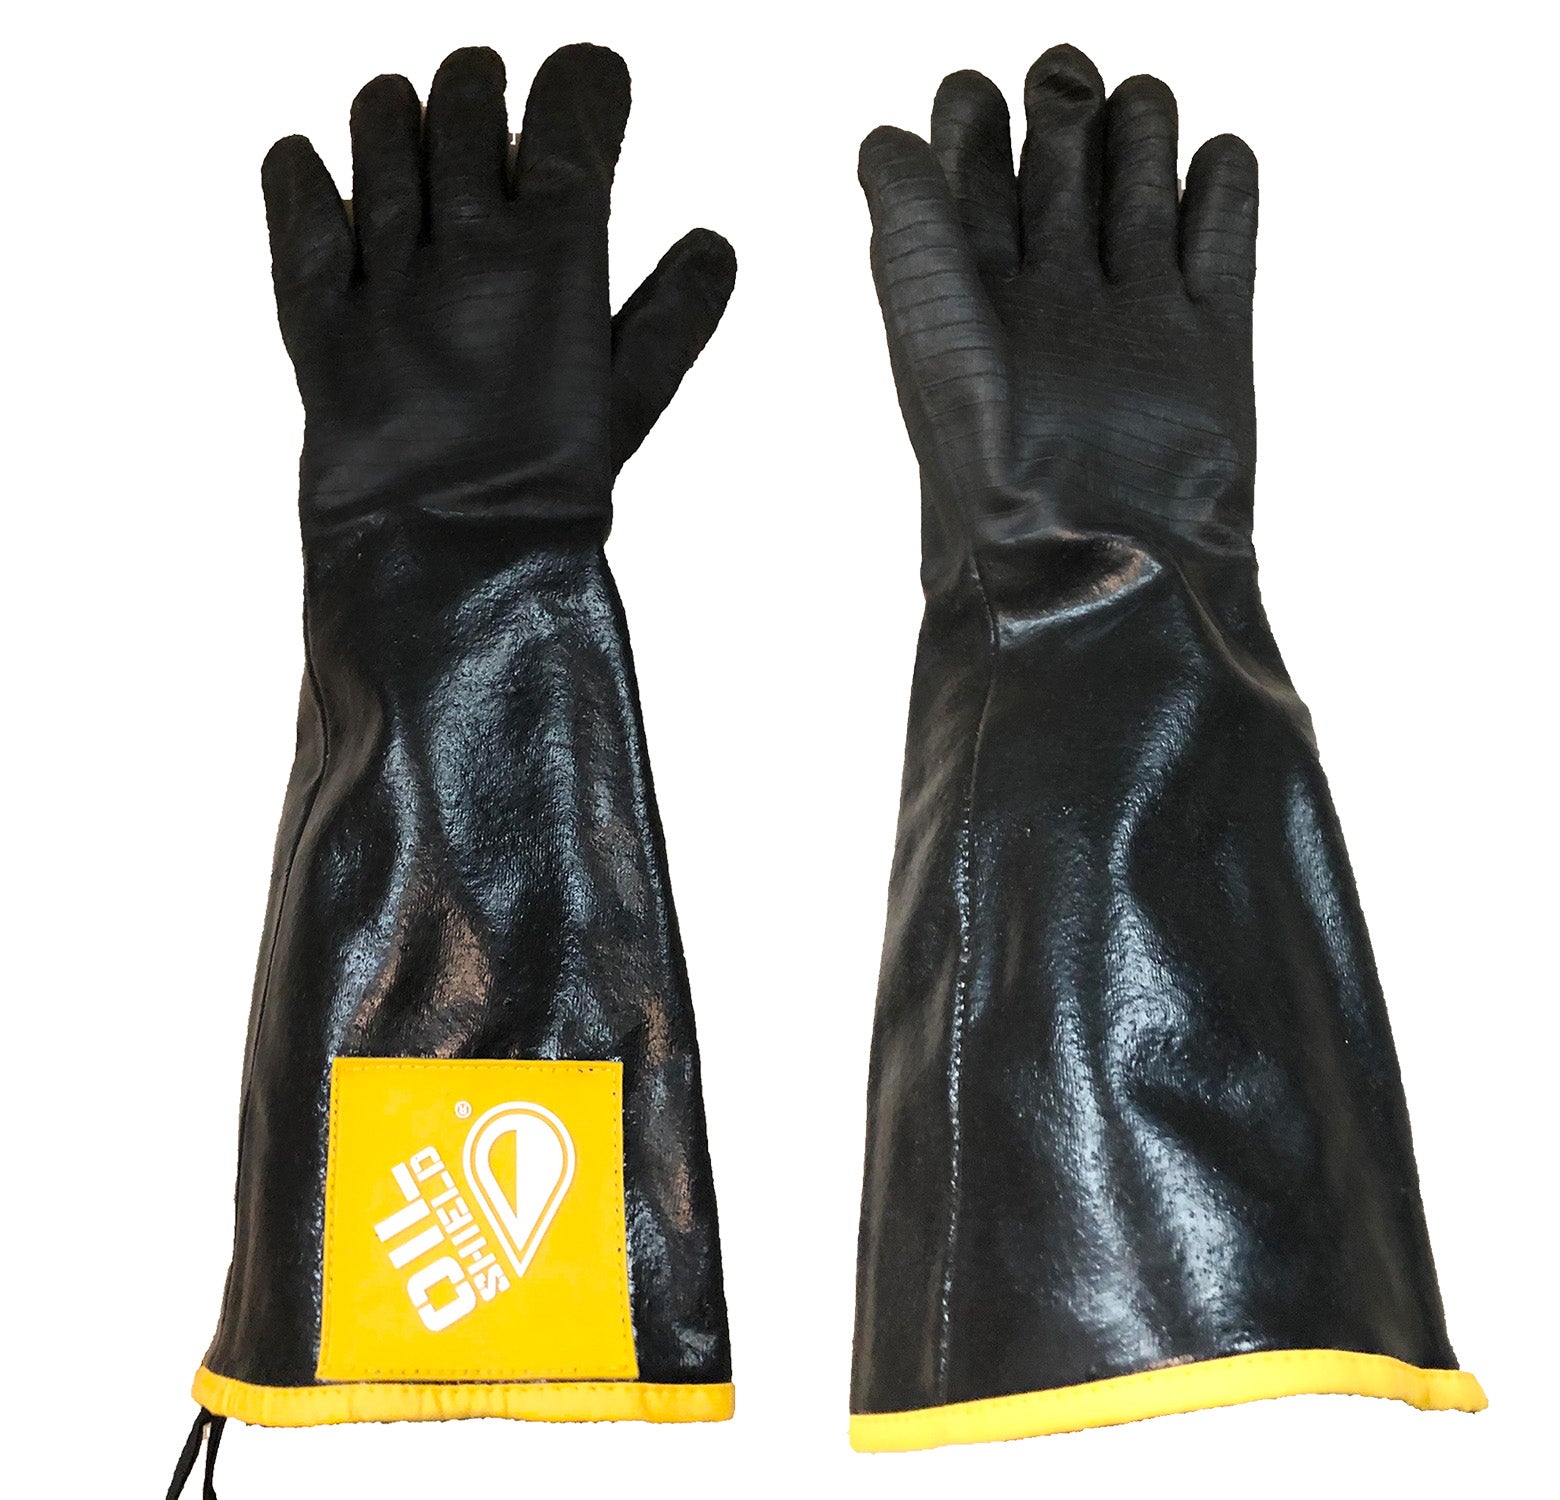 Oil Shield Heat Resistant Neoprene BAKE Gloves, 450 Degree Temp Rating